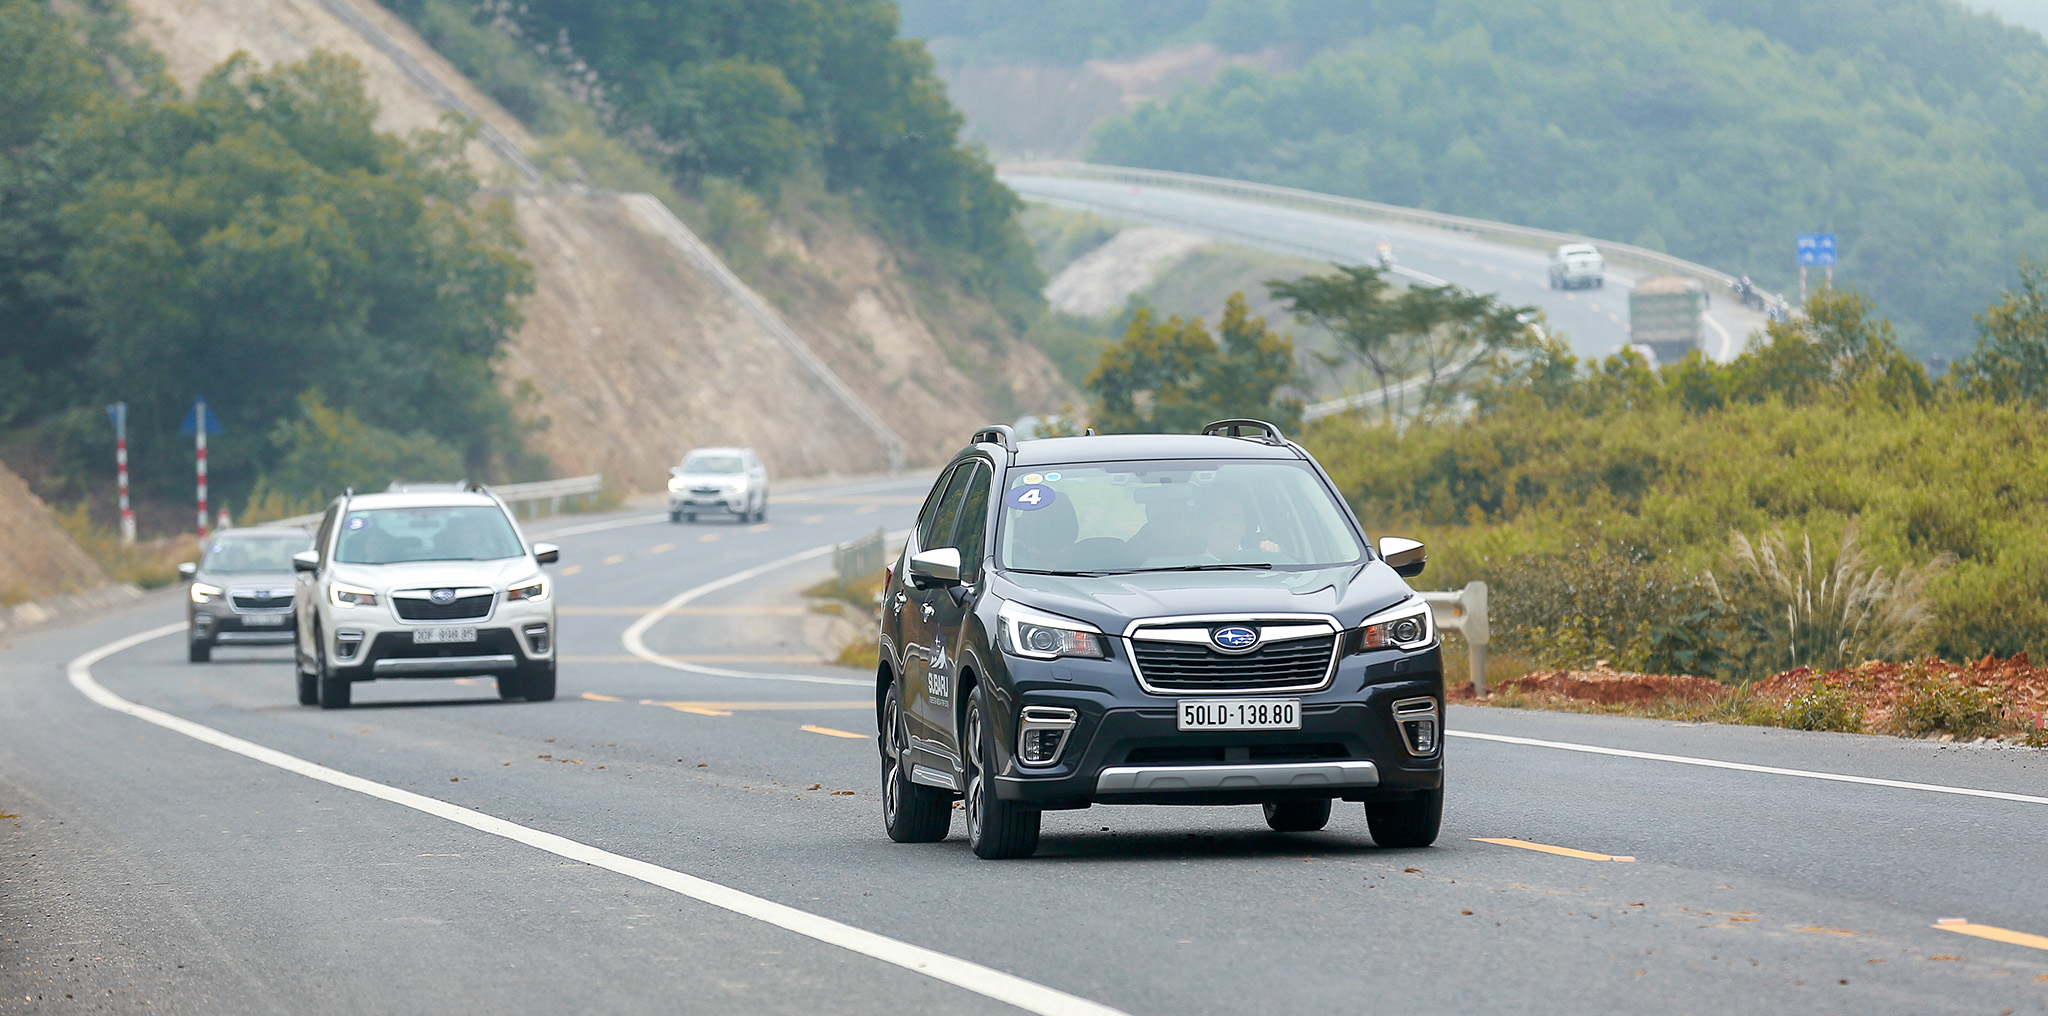 Hành trình trải nghiệm sự khác biệt trên Subaru Forester 2019